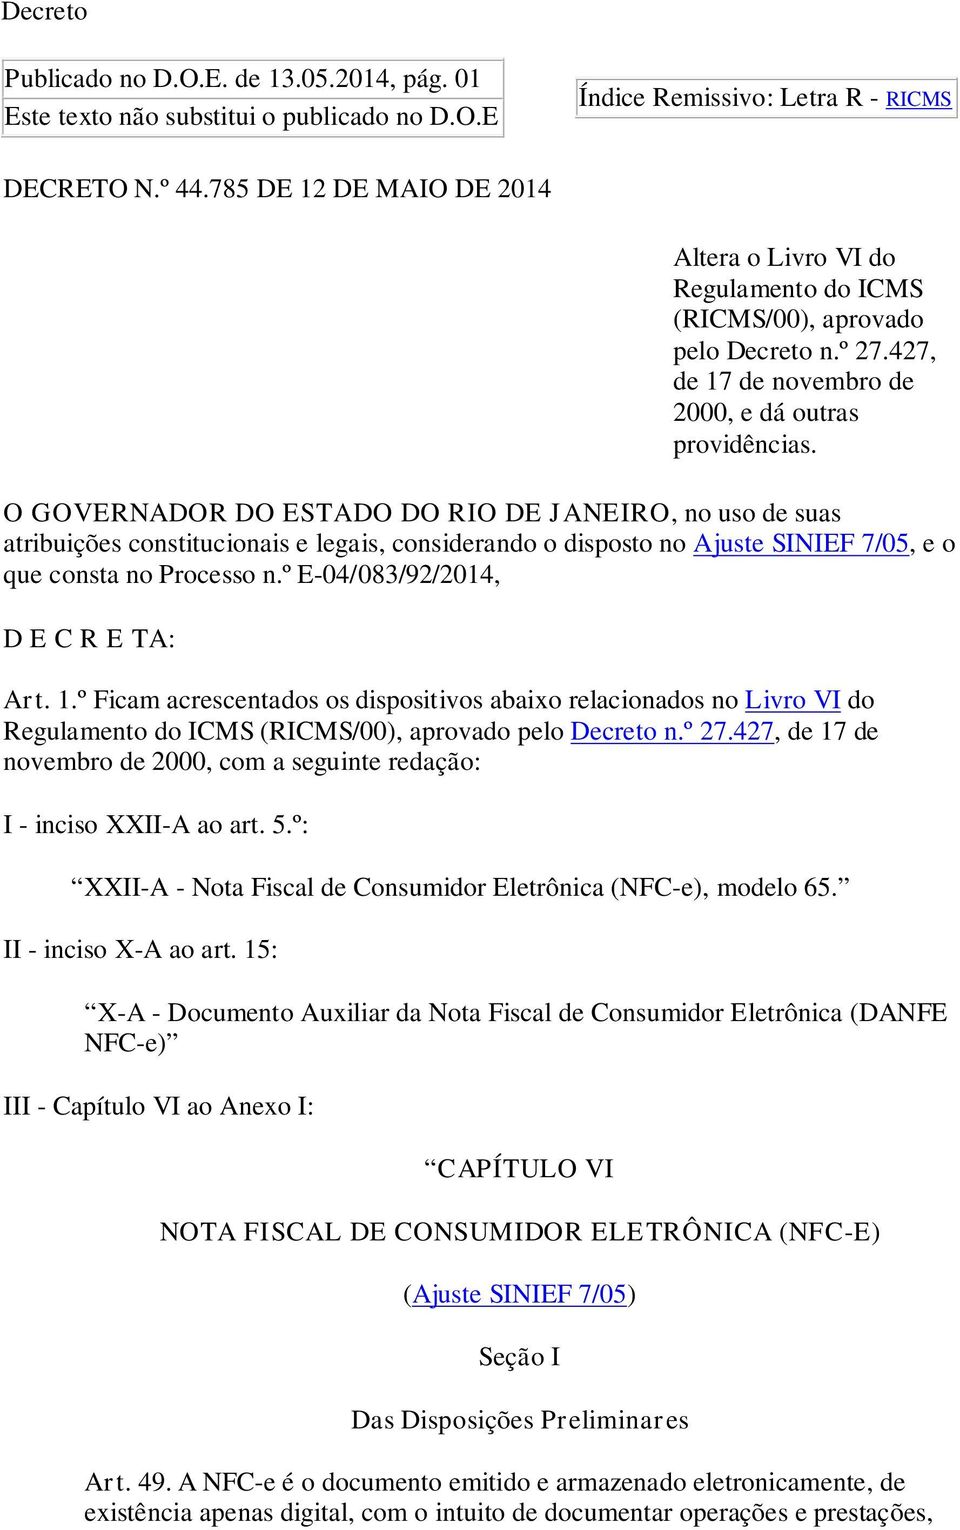 O GOVERNADOR DO ESTADO DO RIO DE JANEIRO, no uso de suas atribuições constitucionais e legais, considerando o disposto no Ajuste SINIEF 7/05, e o que consta no Processo n.